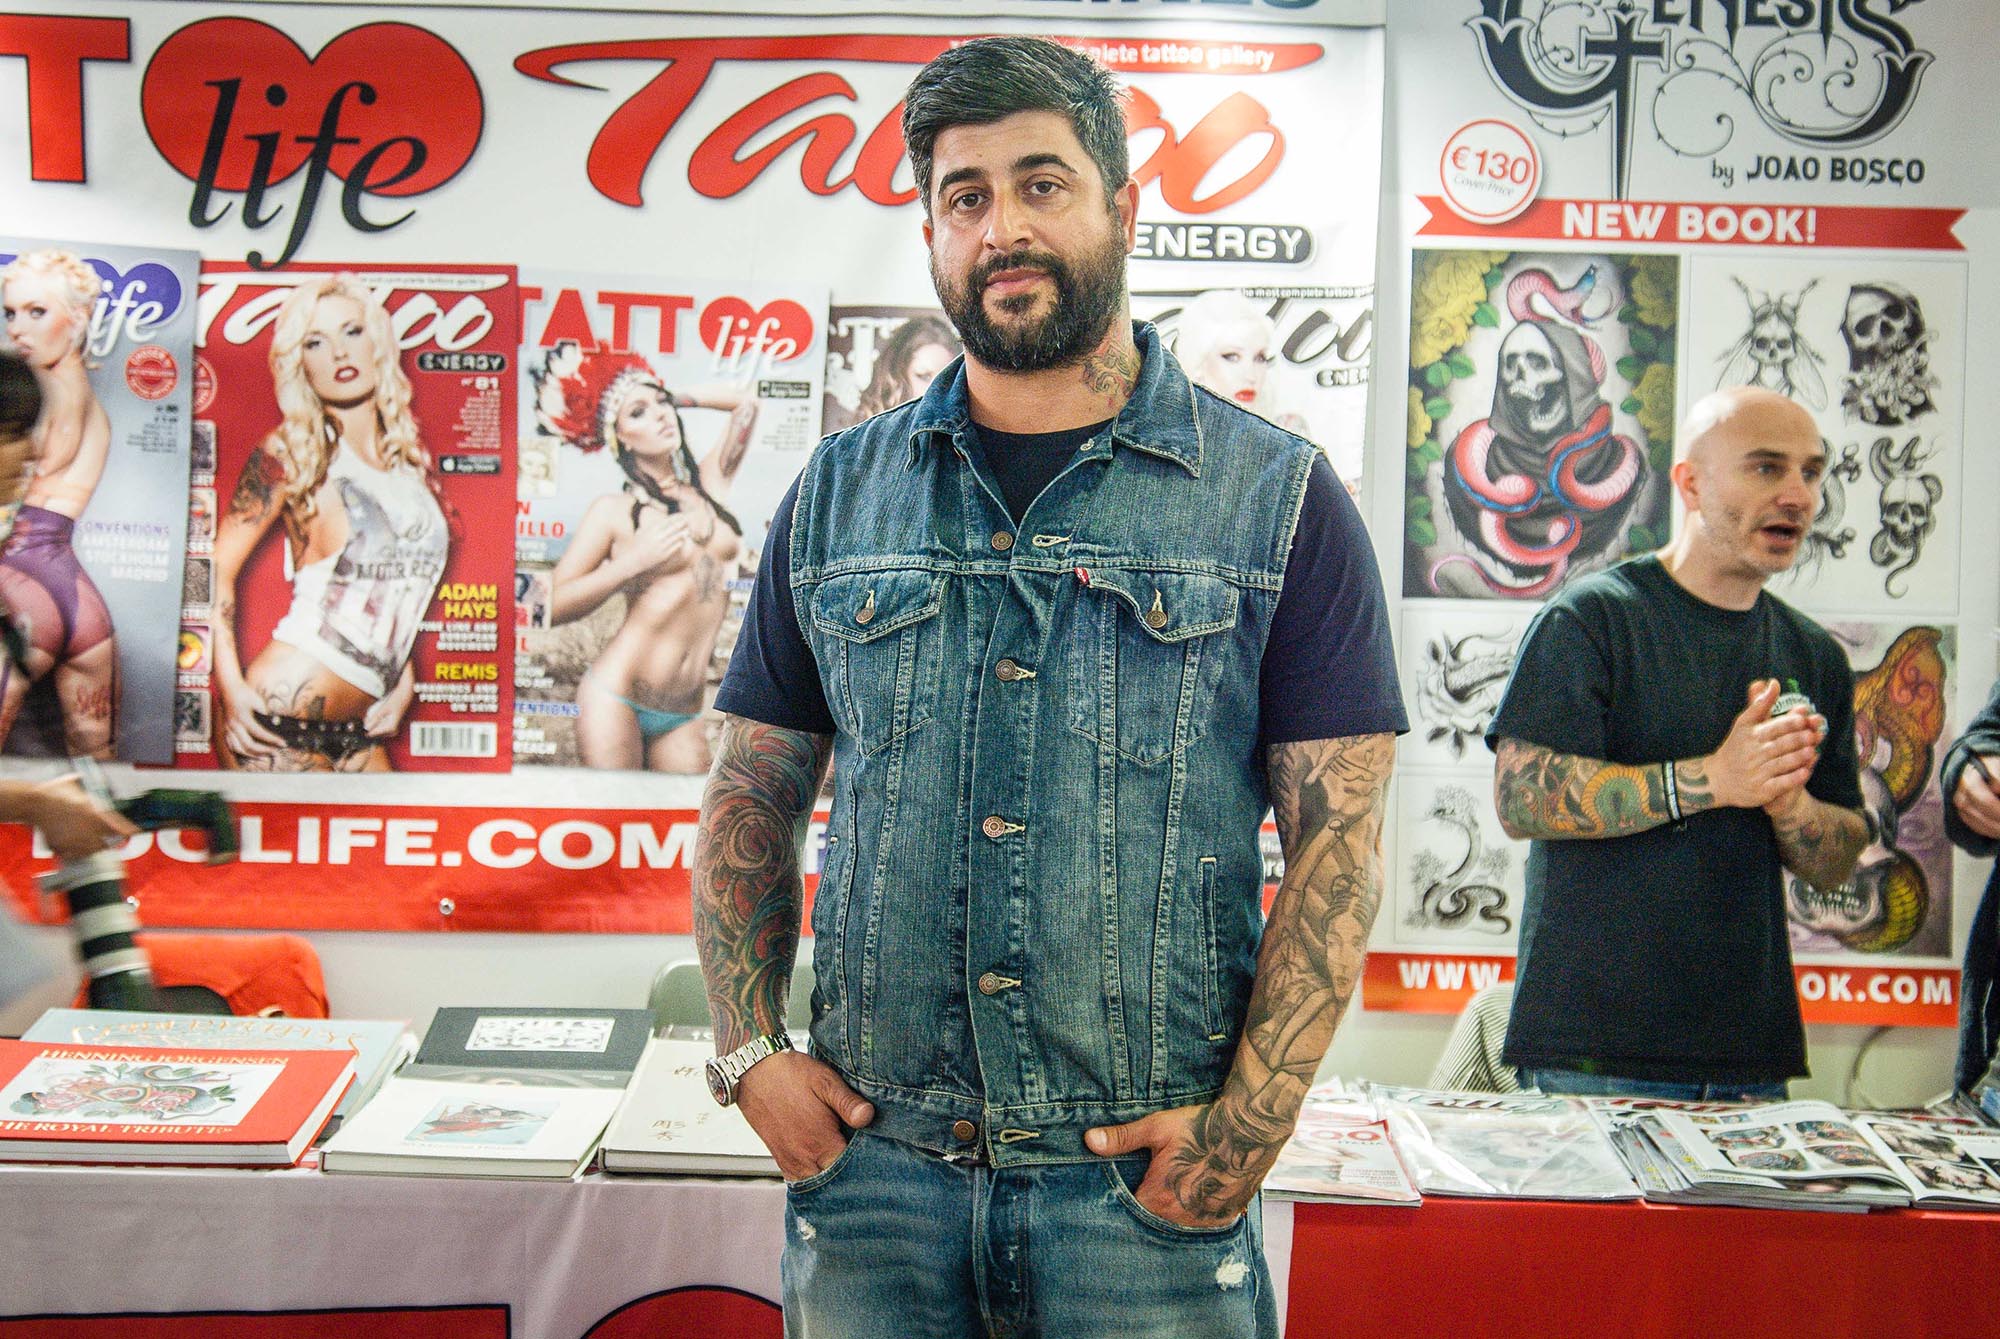  Napoli capitale del tatuaggio: 300 artisti in città per l’International Tattoo Fest